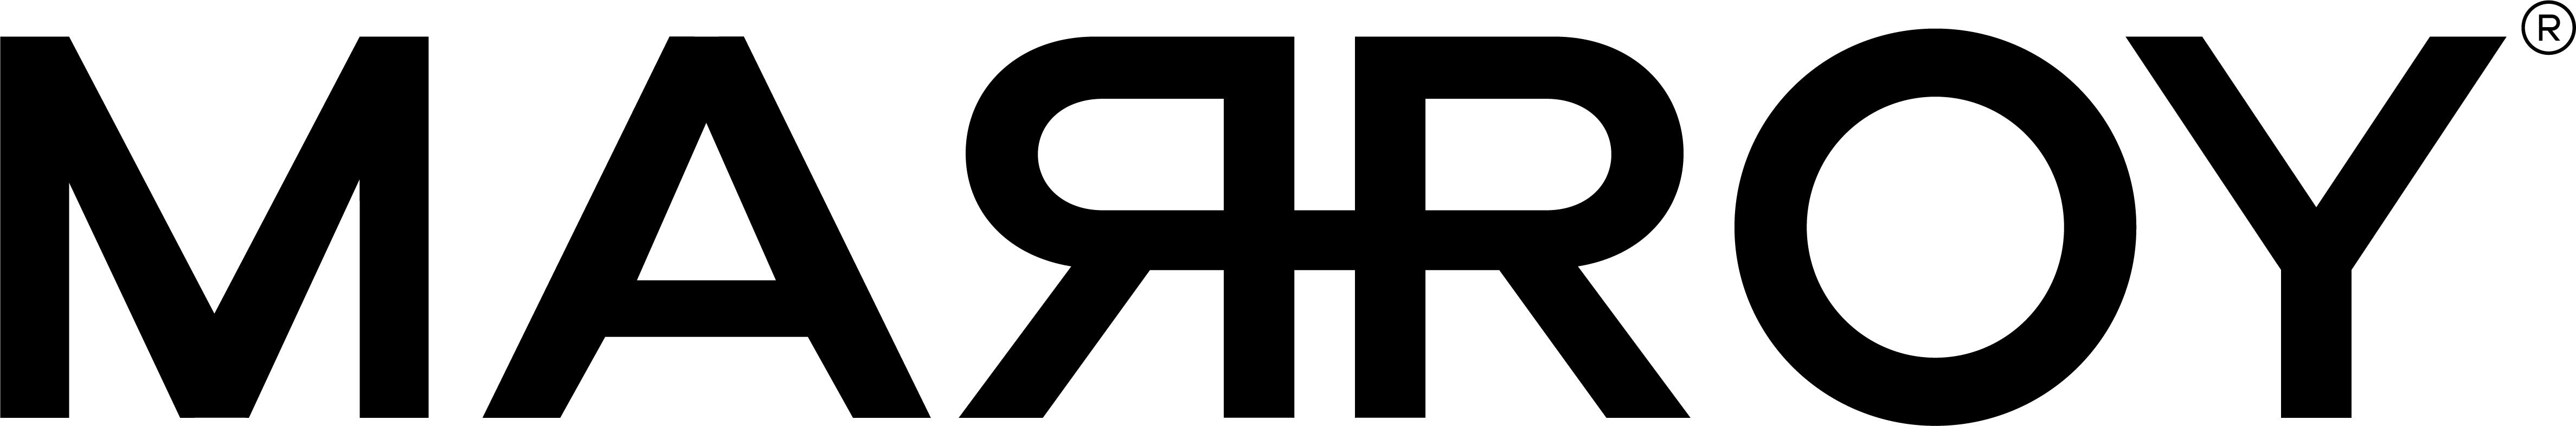 MARROY, logo, shopaquatica.com